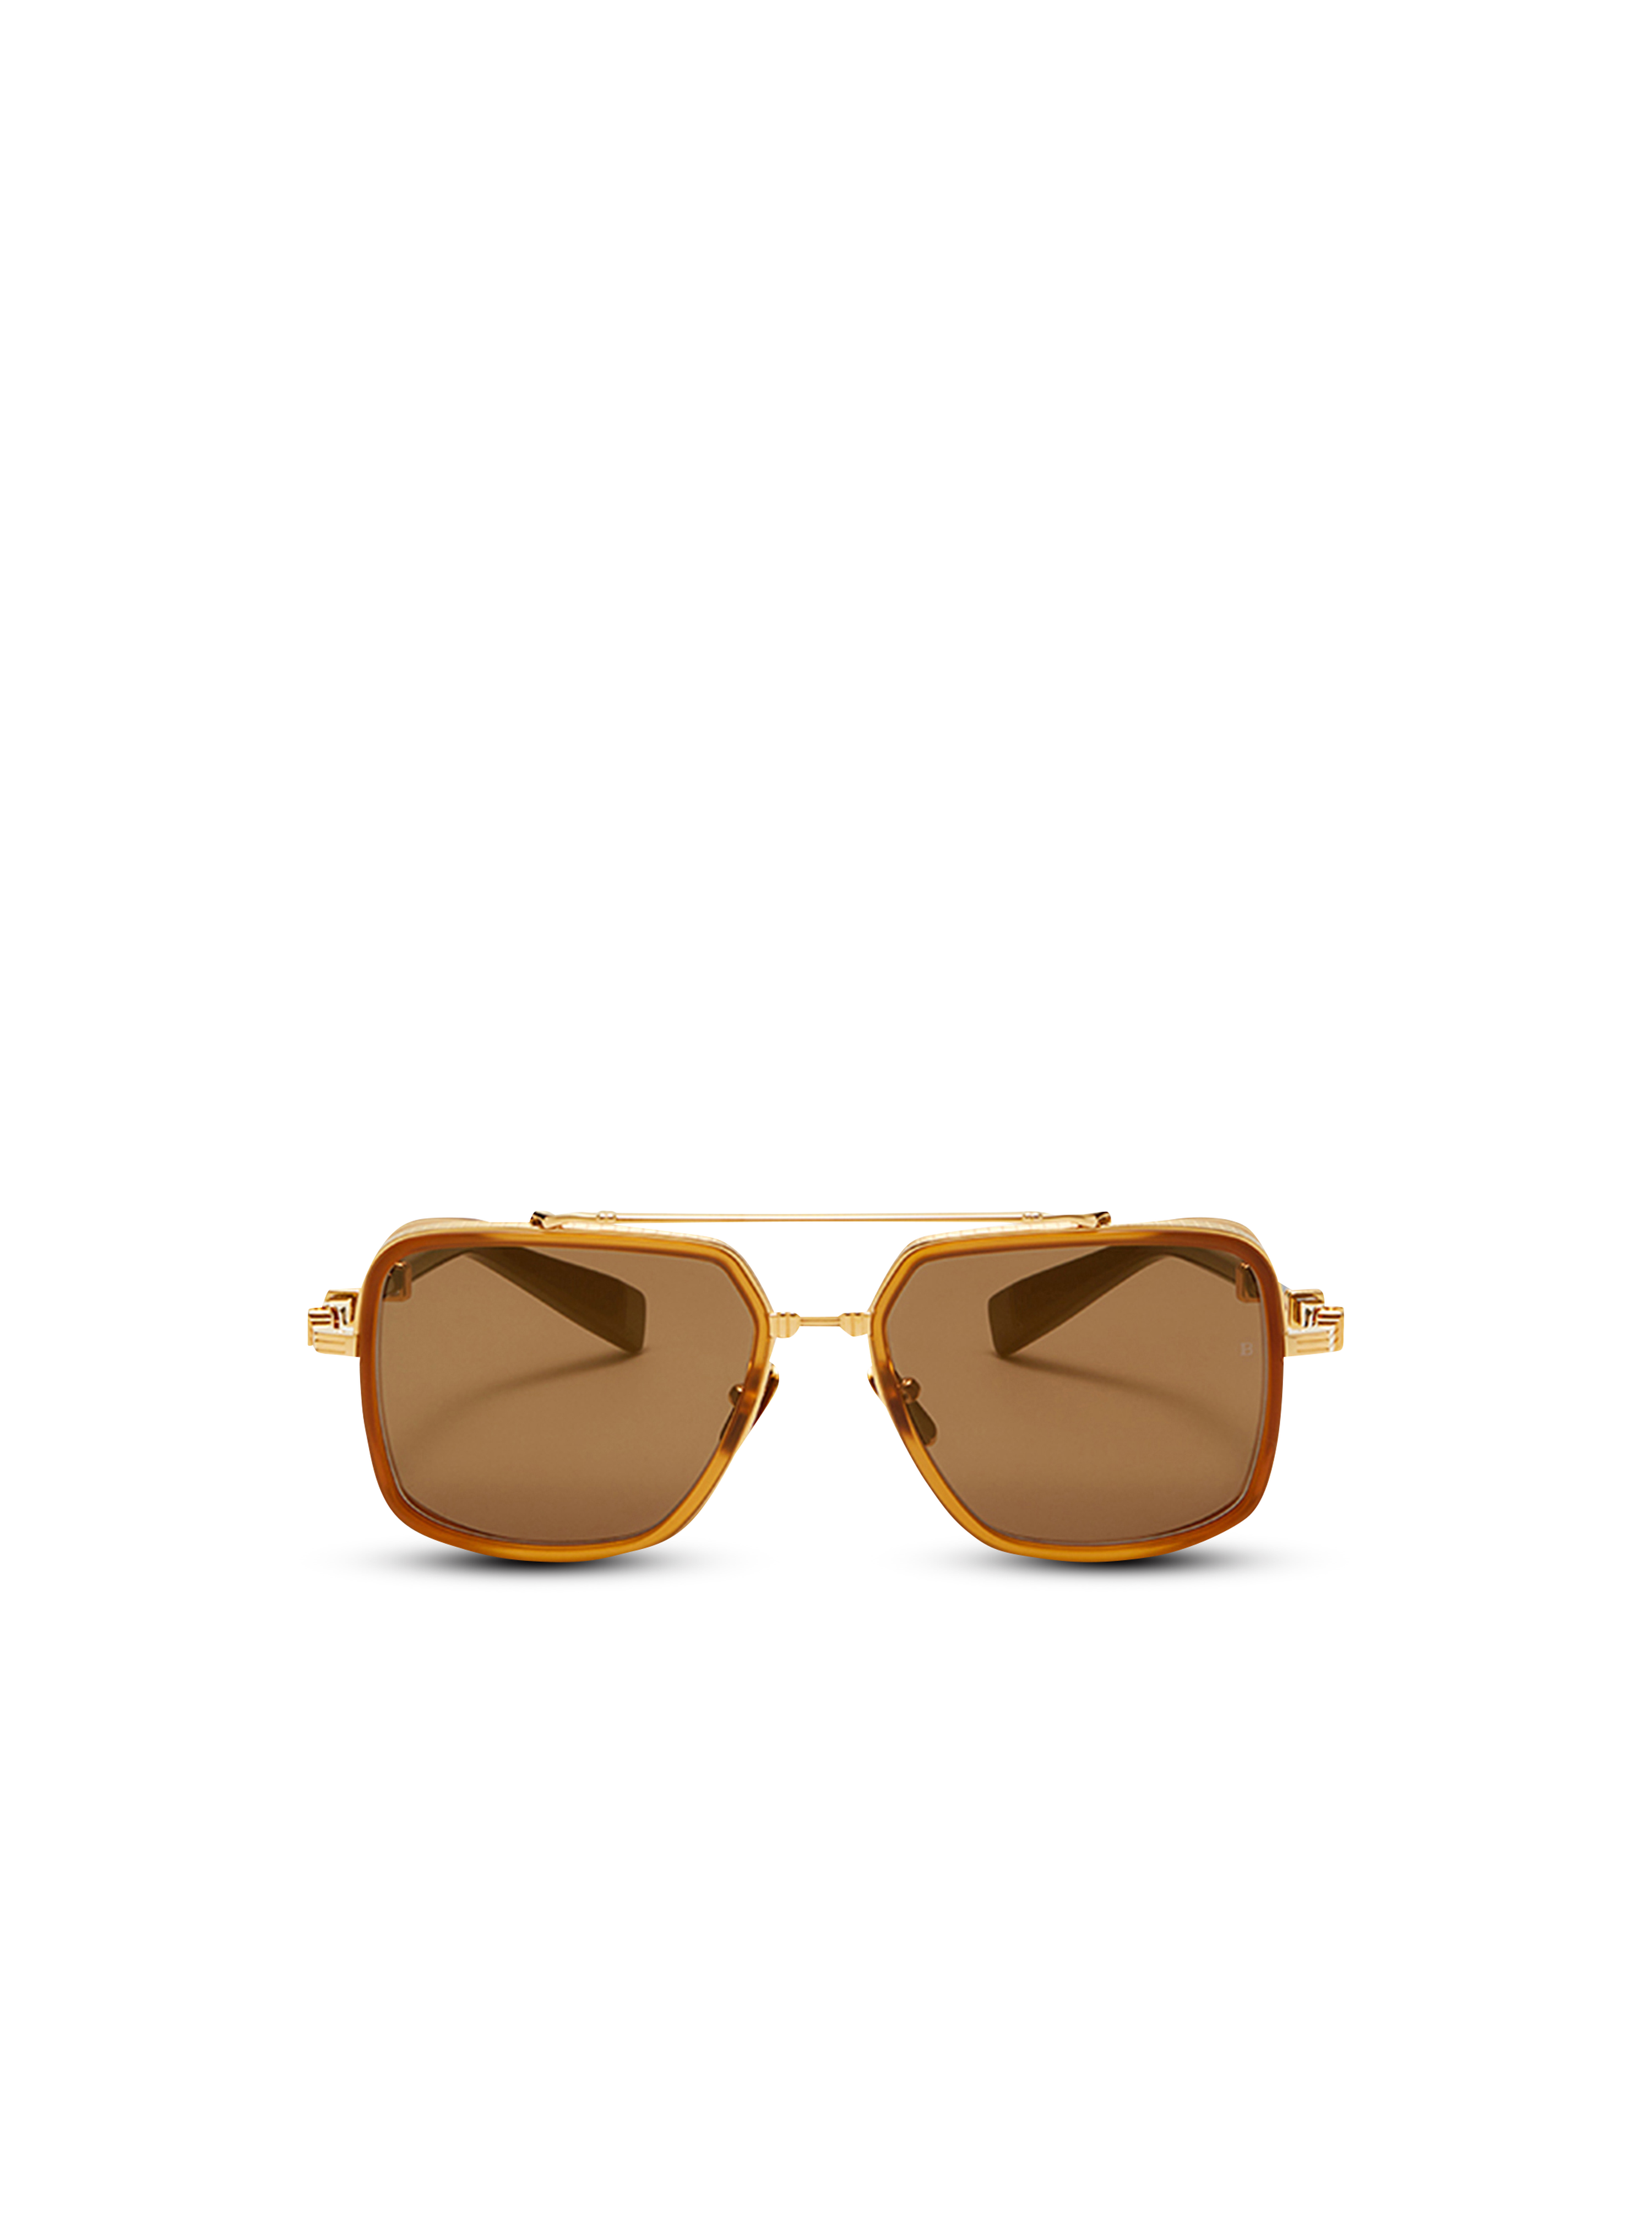 Officier sunglasses, gold